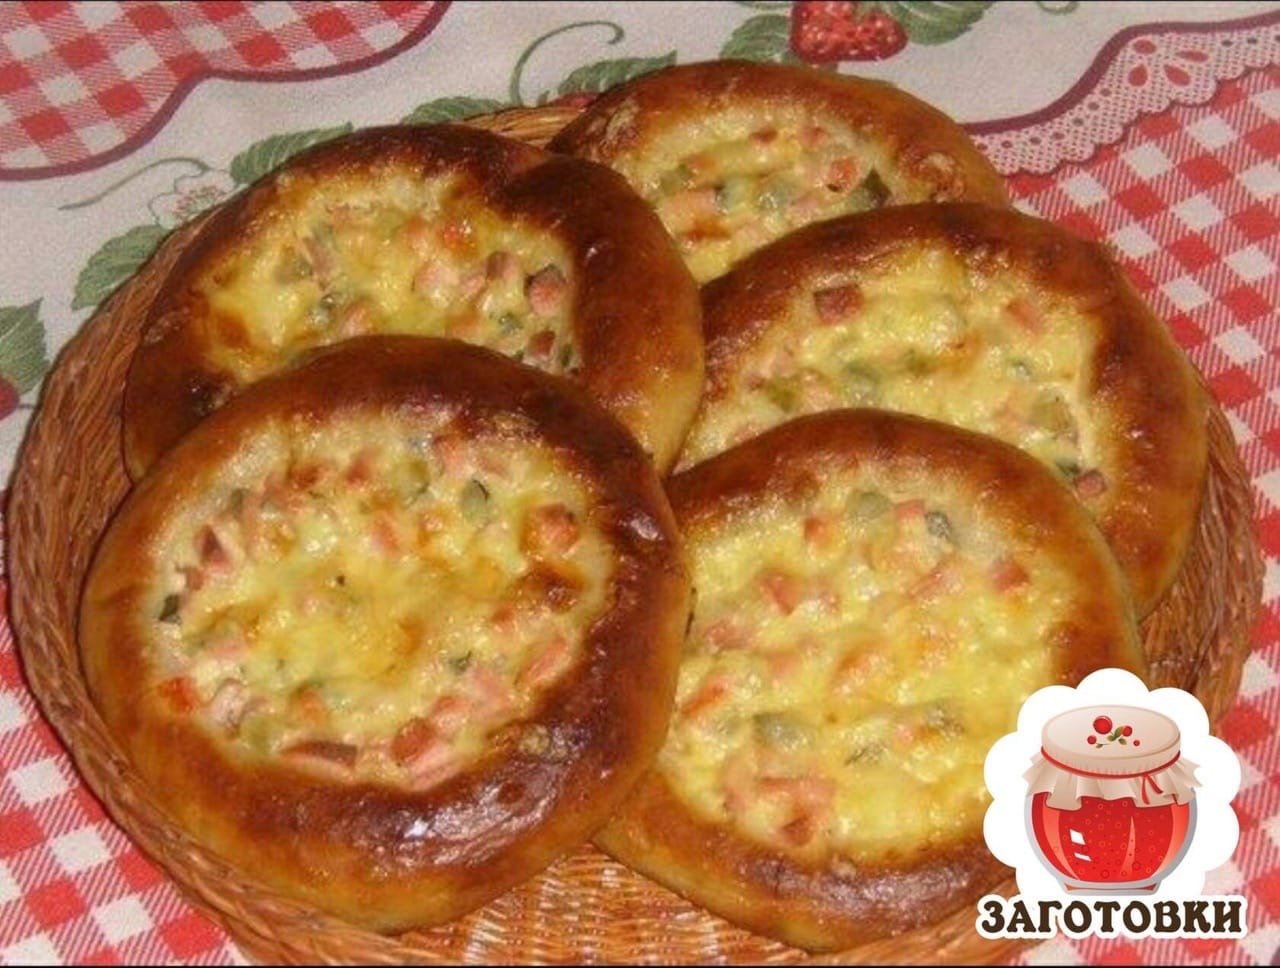 мини пицца в духовке из дрожжевого теста с колбасой и сыром рецепт пошаговый фото 83